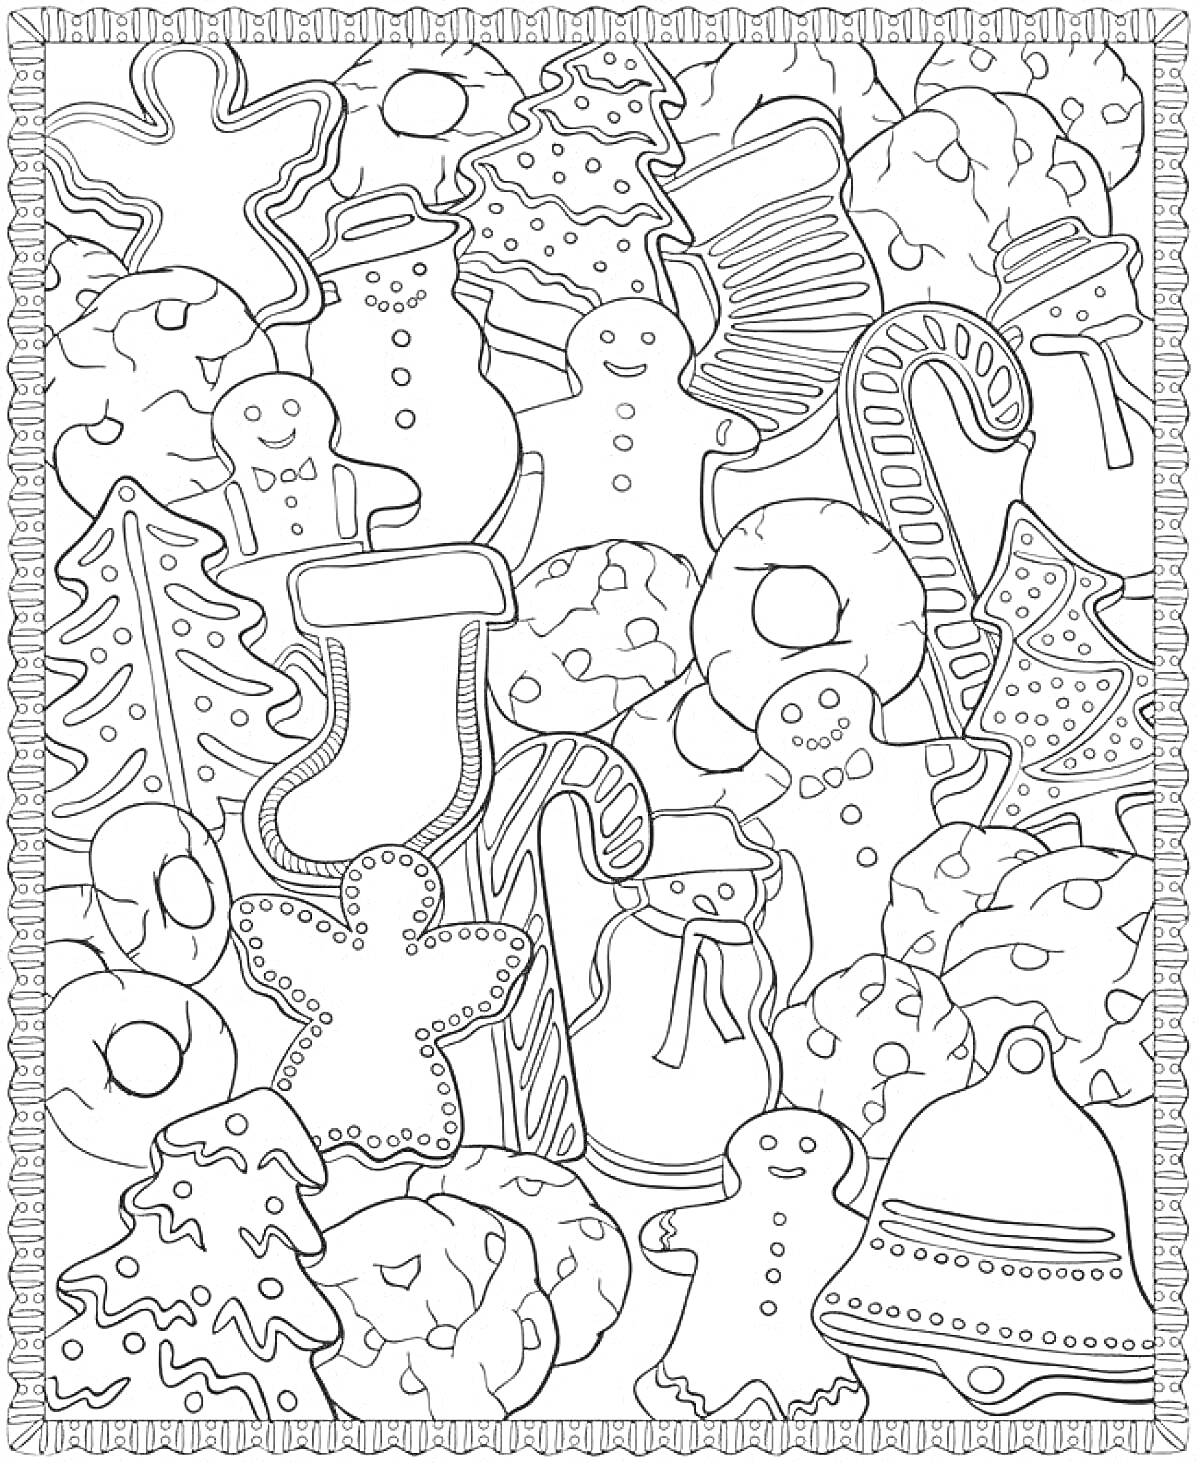 Раскраска Пряничная новогодняя раскраска – пряничные человечки, снежинки, рукавички, колокольчики, елочки, снежные шары, конфеты